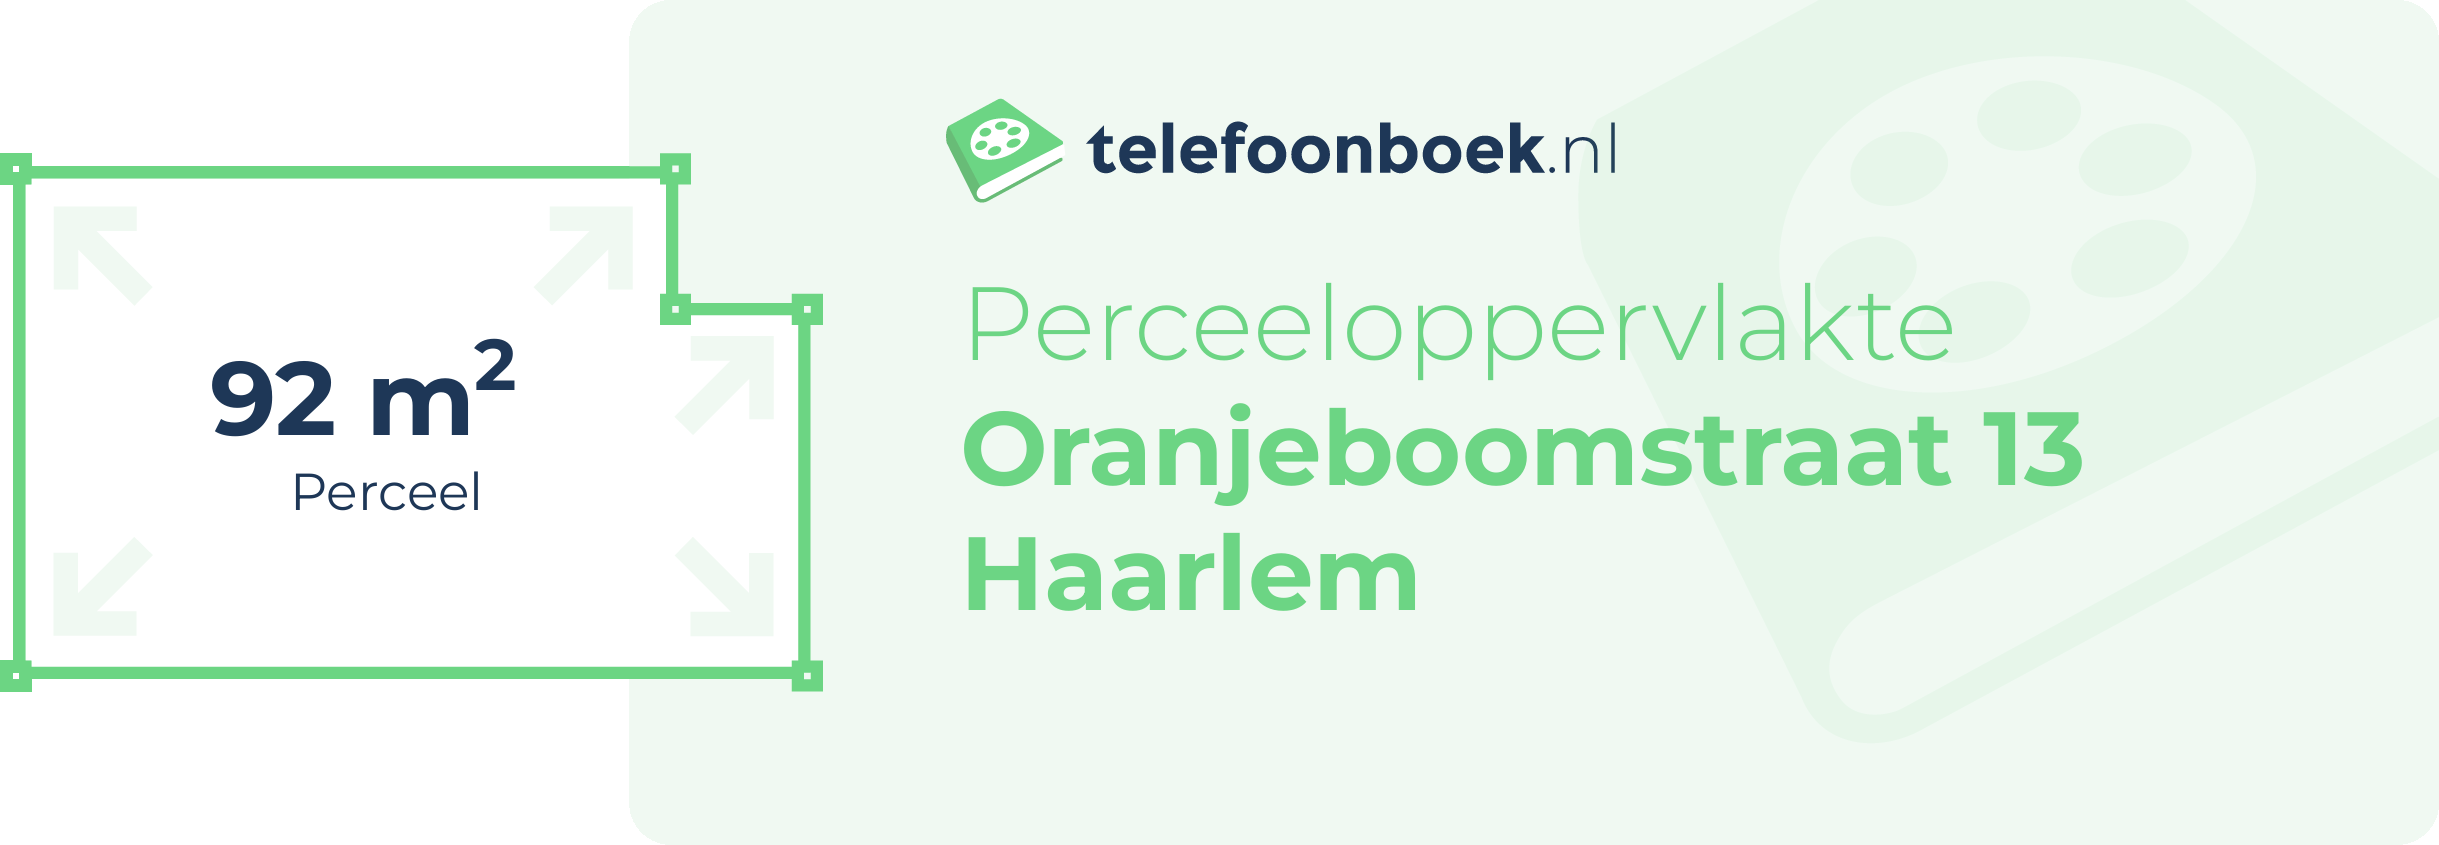 Perceeloppervlakte Oranjeboomstraat 13 Haarlem